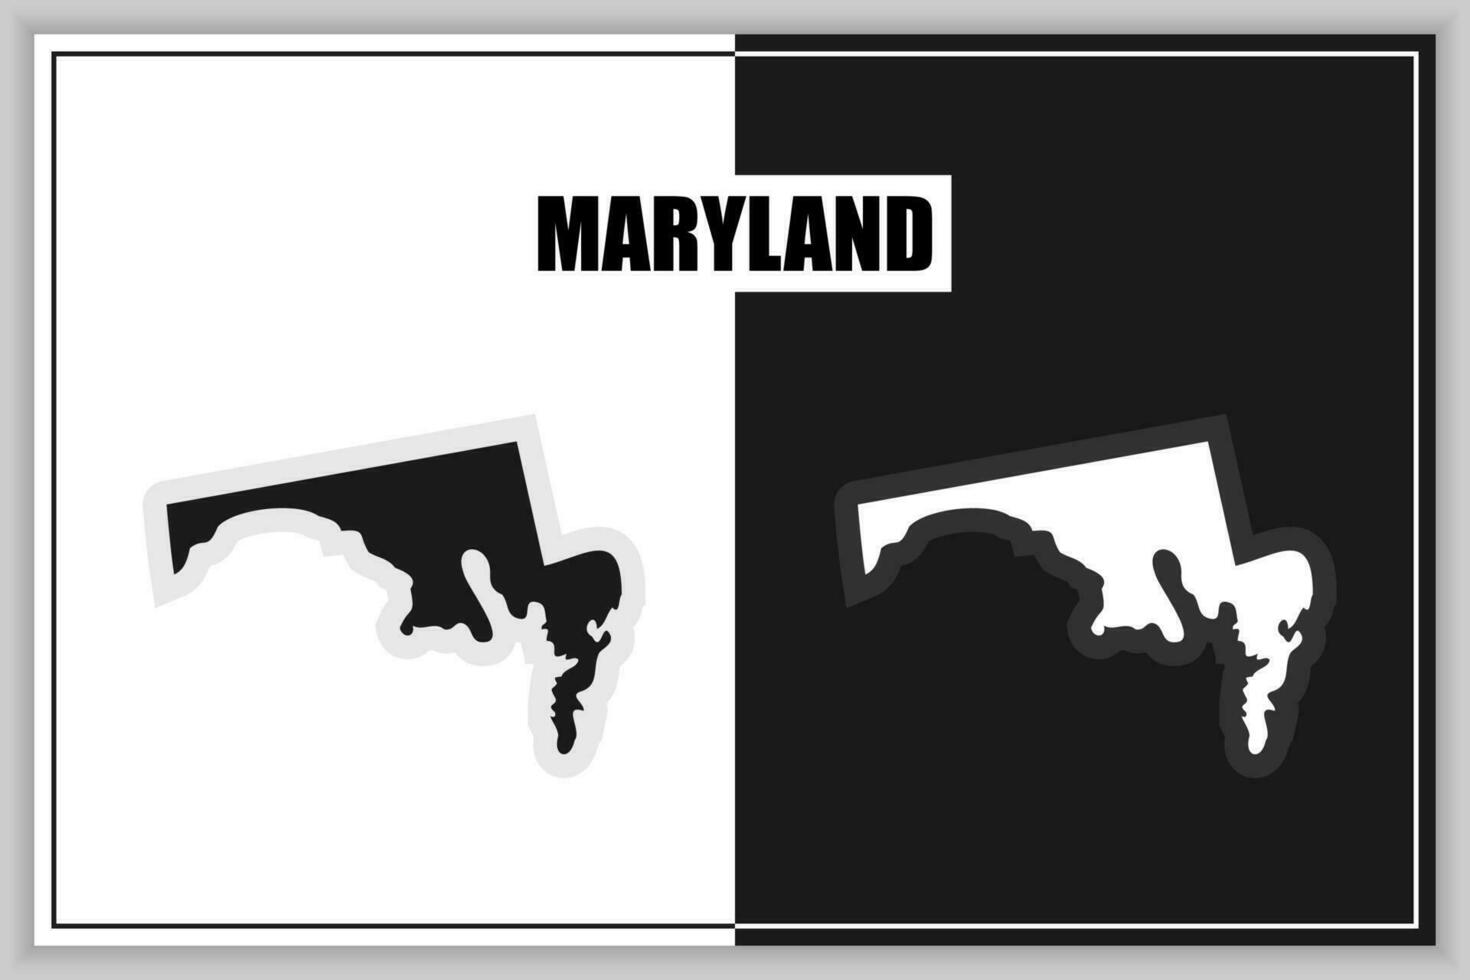 vlak stijl kaart van staat van Maryland, Verenigde Staten van Amerika. Maryland schets. vector illustratie